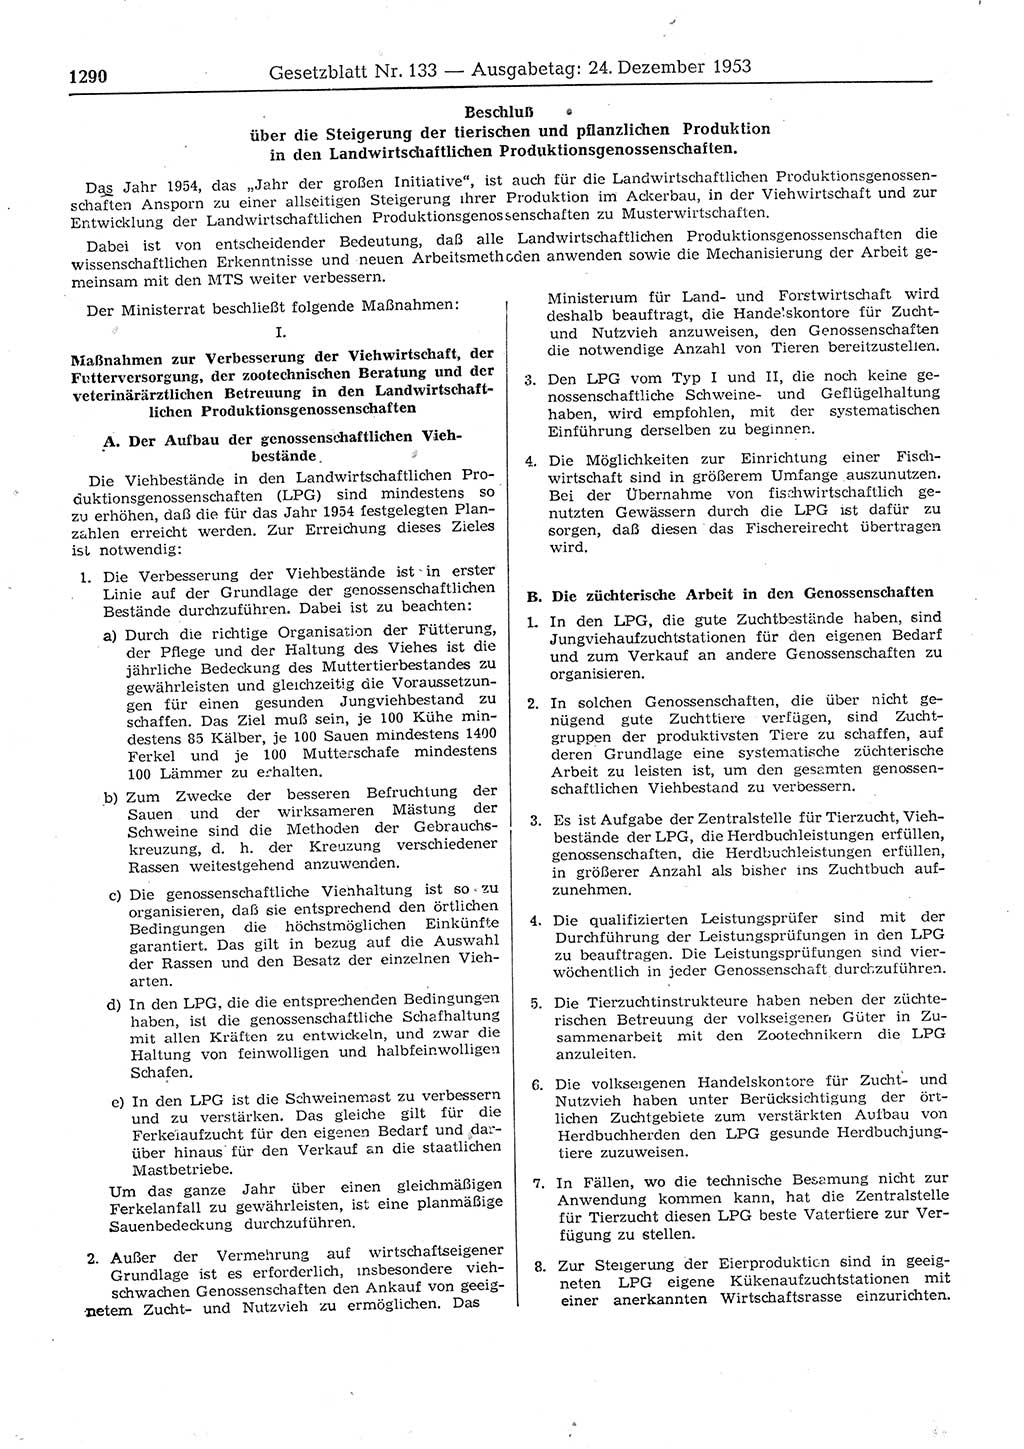 Gesetzblatt (GBl.) der Deutschen Demokratischen Republik (DDR) 1953, Seite 1290 (GBl. DDR 1953, S. 1290)